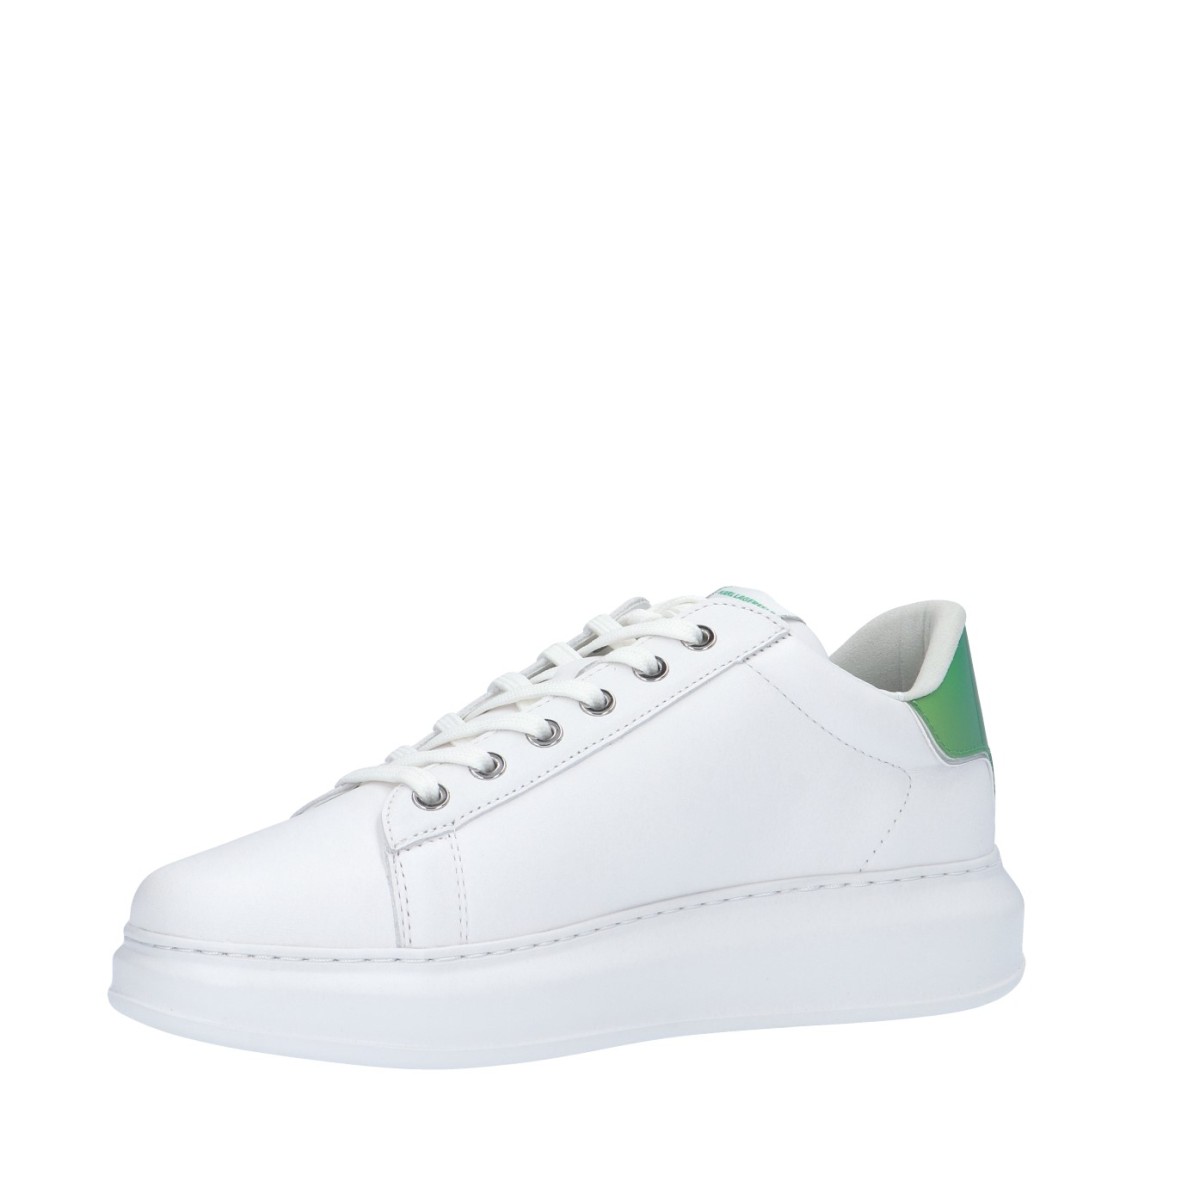 Karl lagerfeld Sneaker Bianco/verde Gomma KL52530G